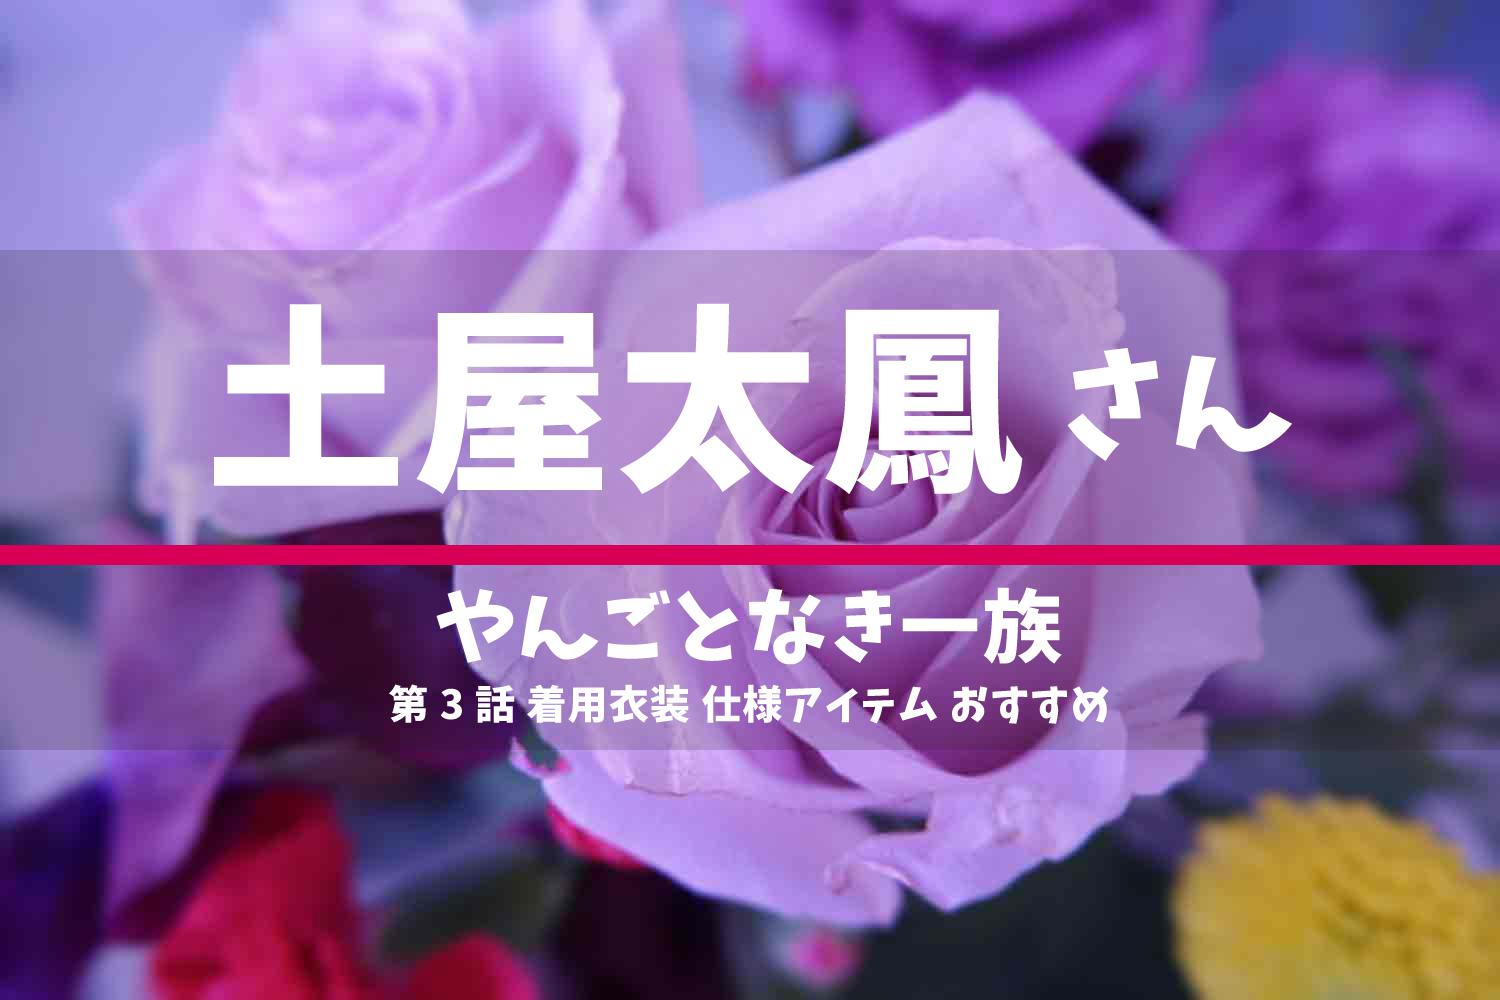 やんごとなき一族 土屋太鳳さん ドラマ 衣装 2022年5月5日放送